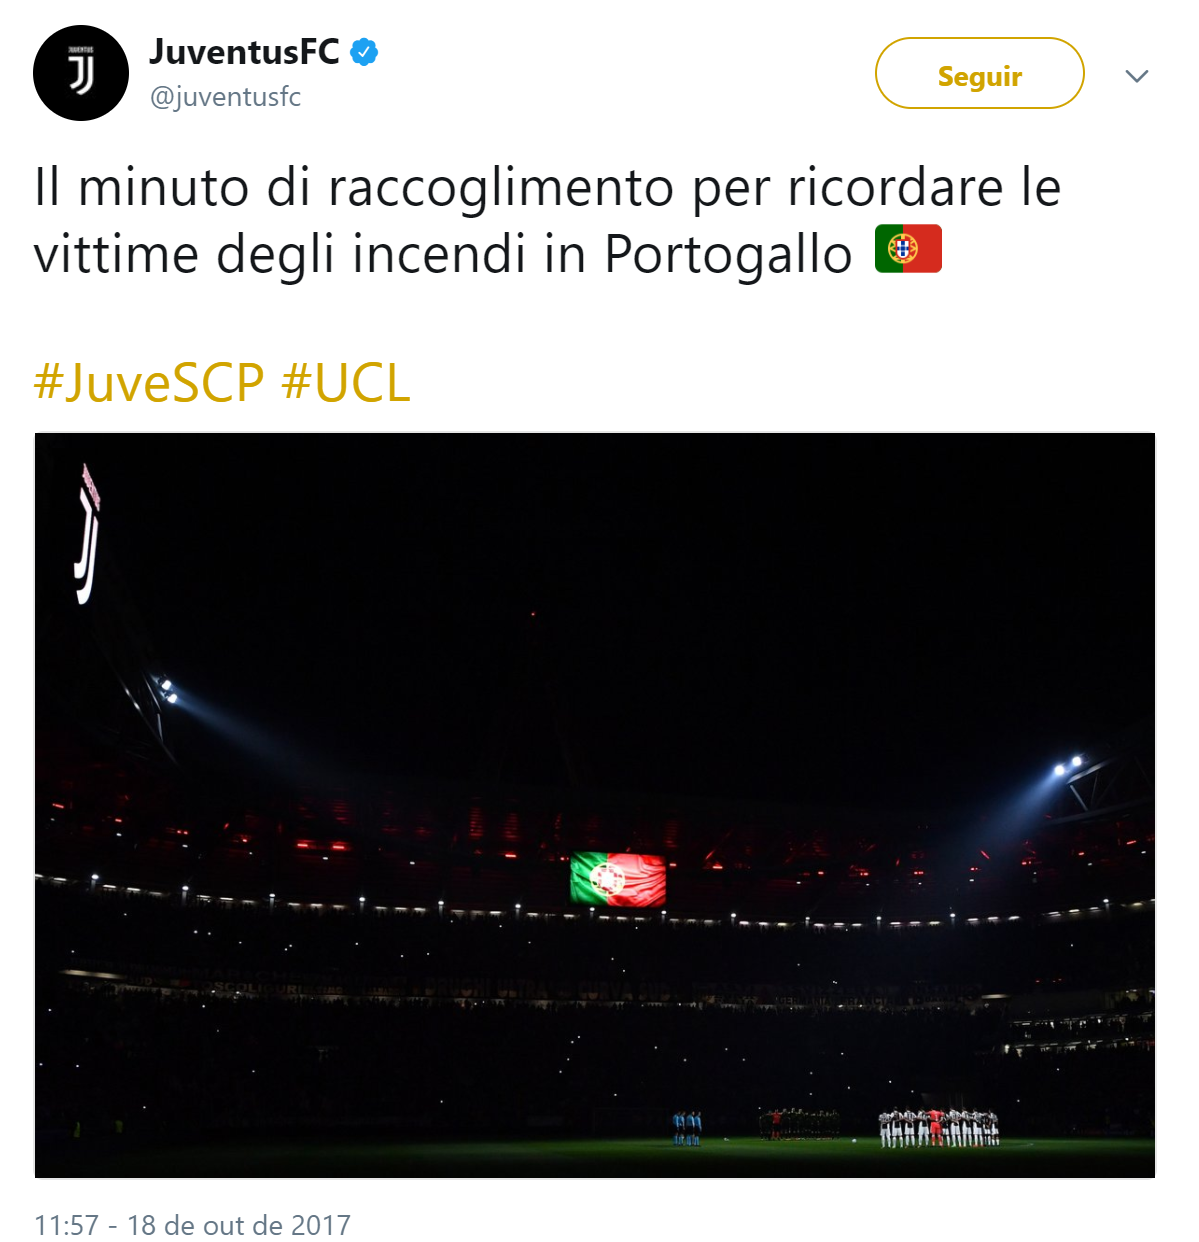 Juventus faz bonita homenagem às vítimas dos incêndios em Portugal